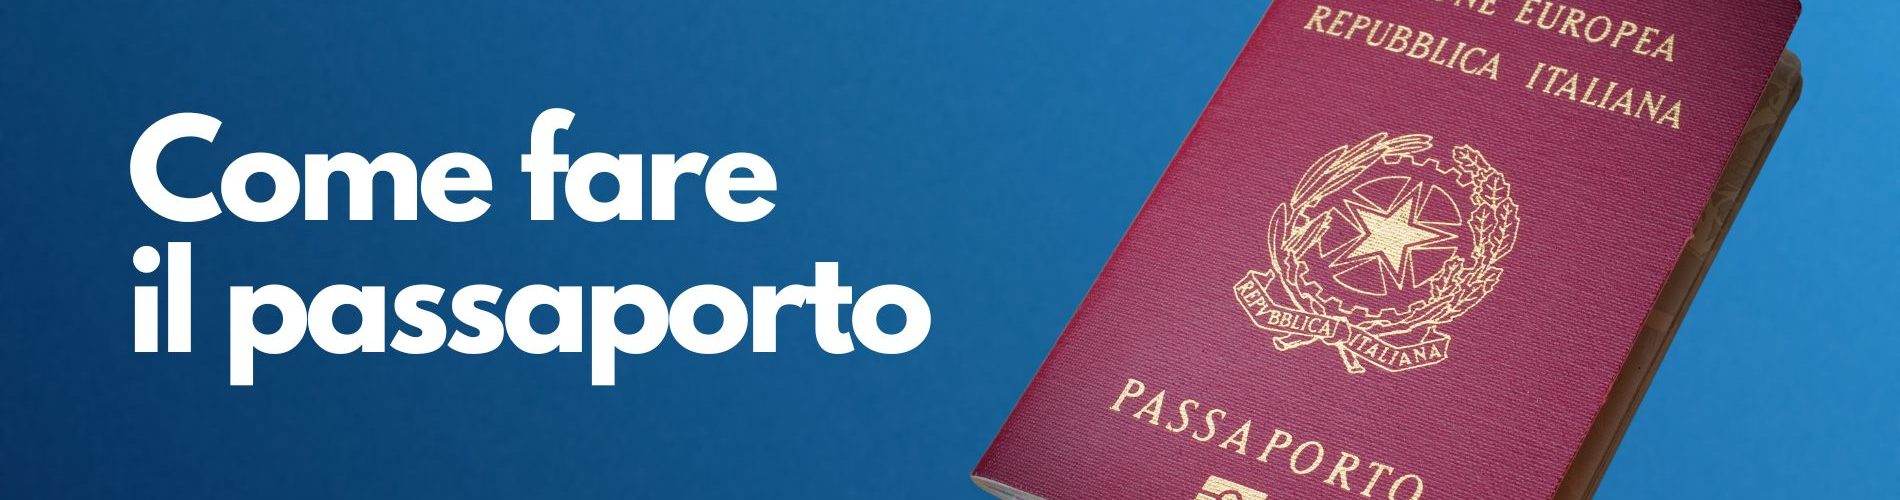 Come fare il passaporto